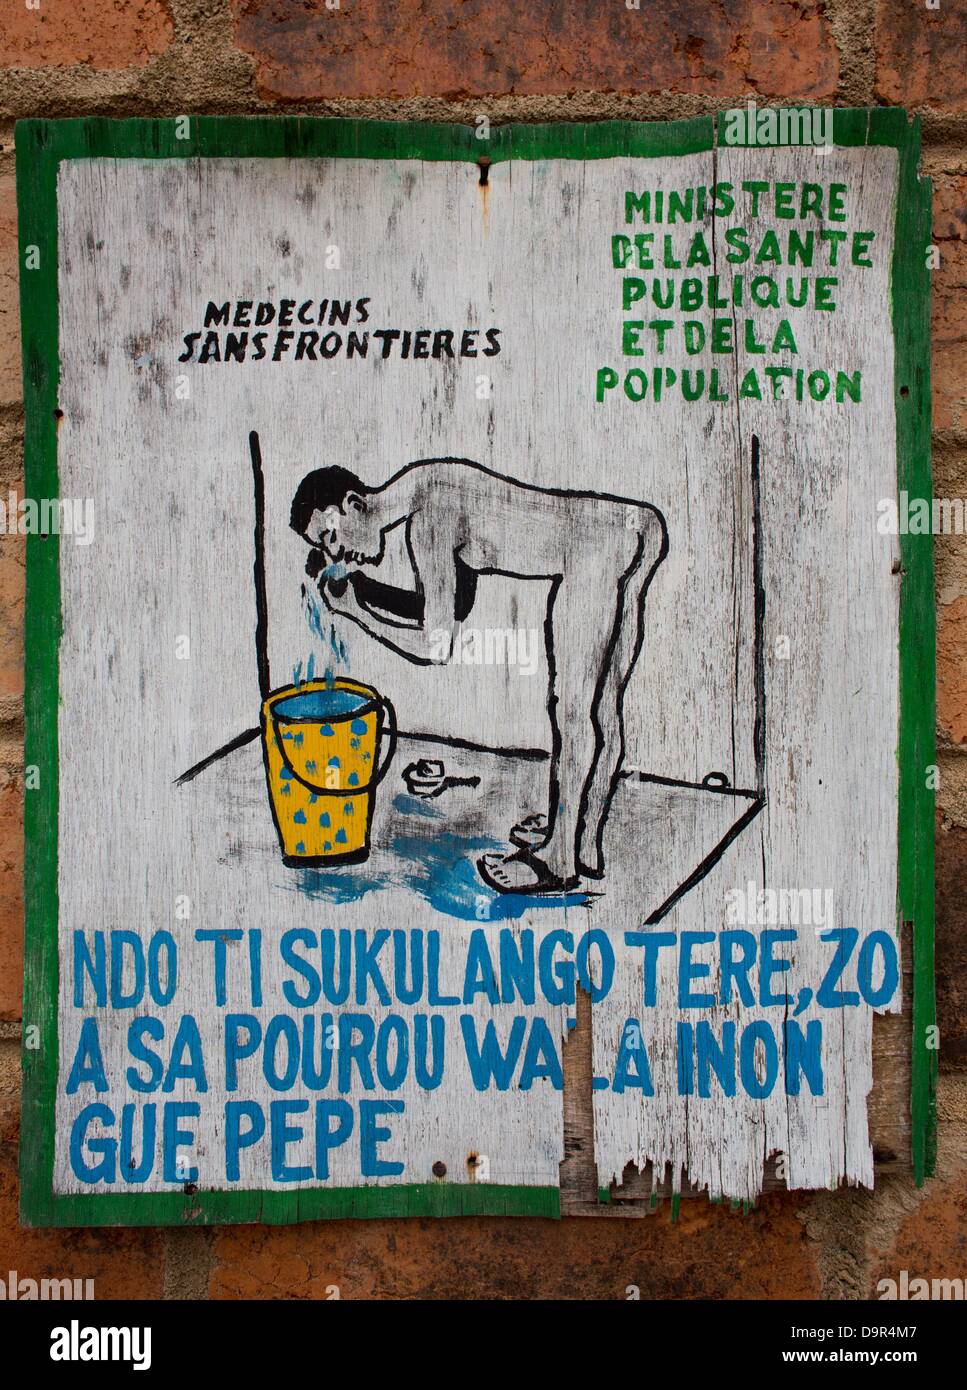 health education at the latrine in batangafo hospital, CAR Stock Photo